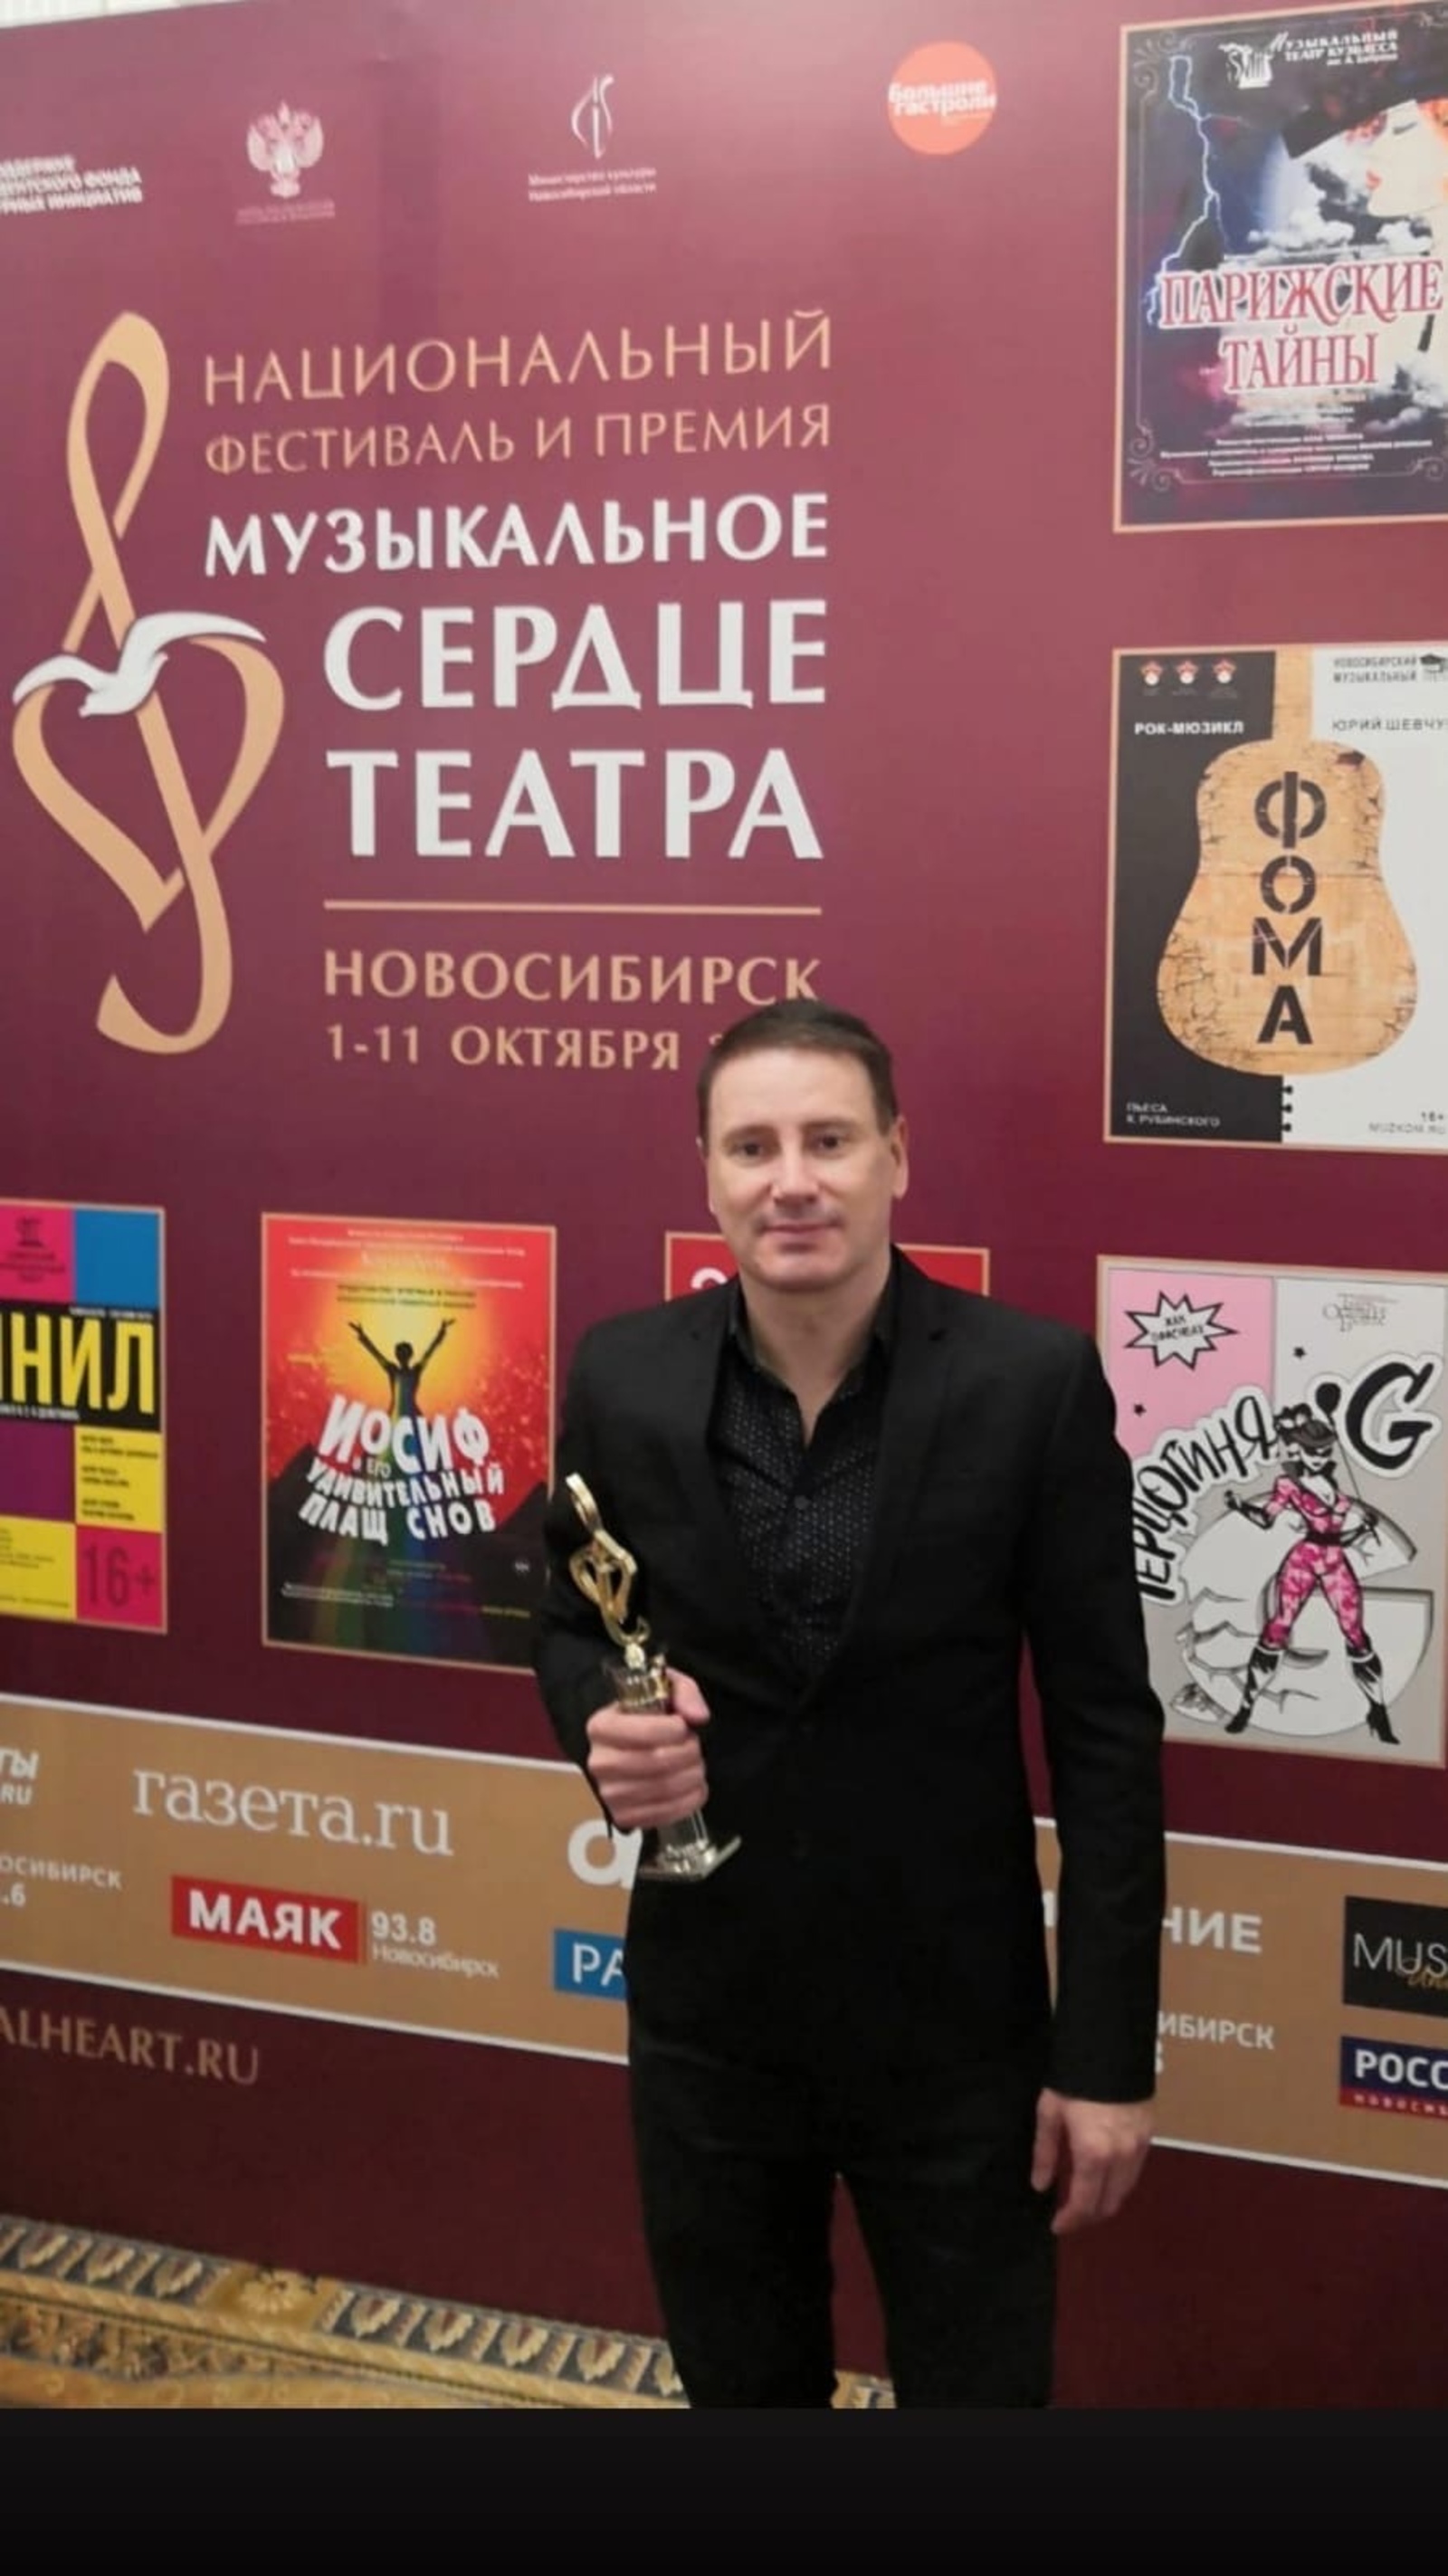 Главному дирижеру Башоперы вручили премию «Музыкальное сердце театра»